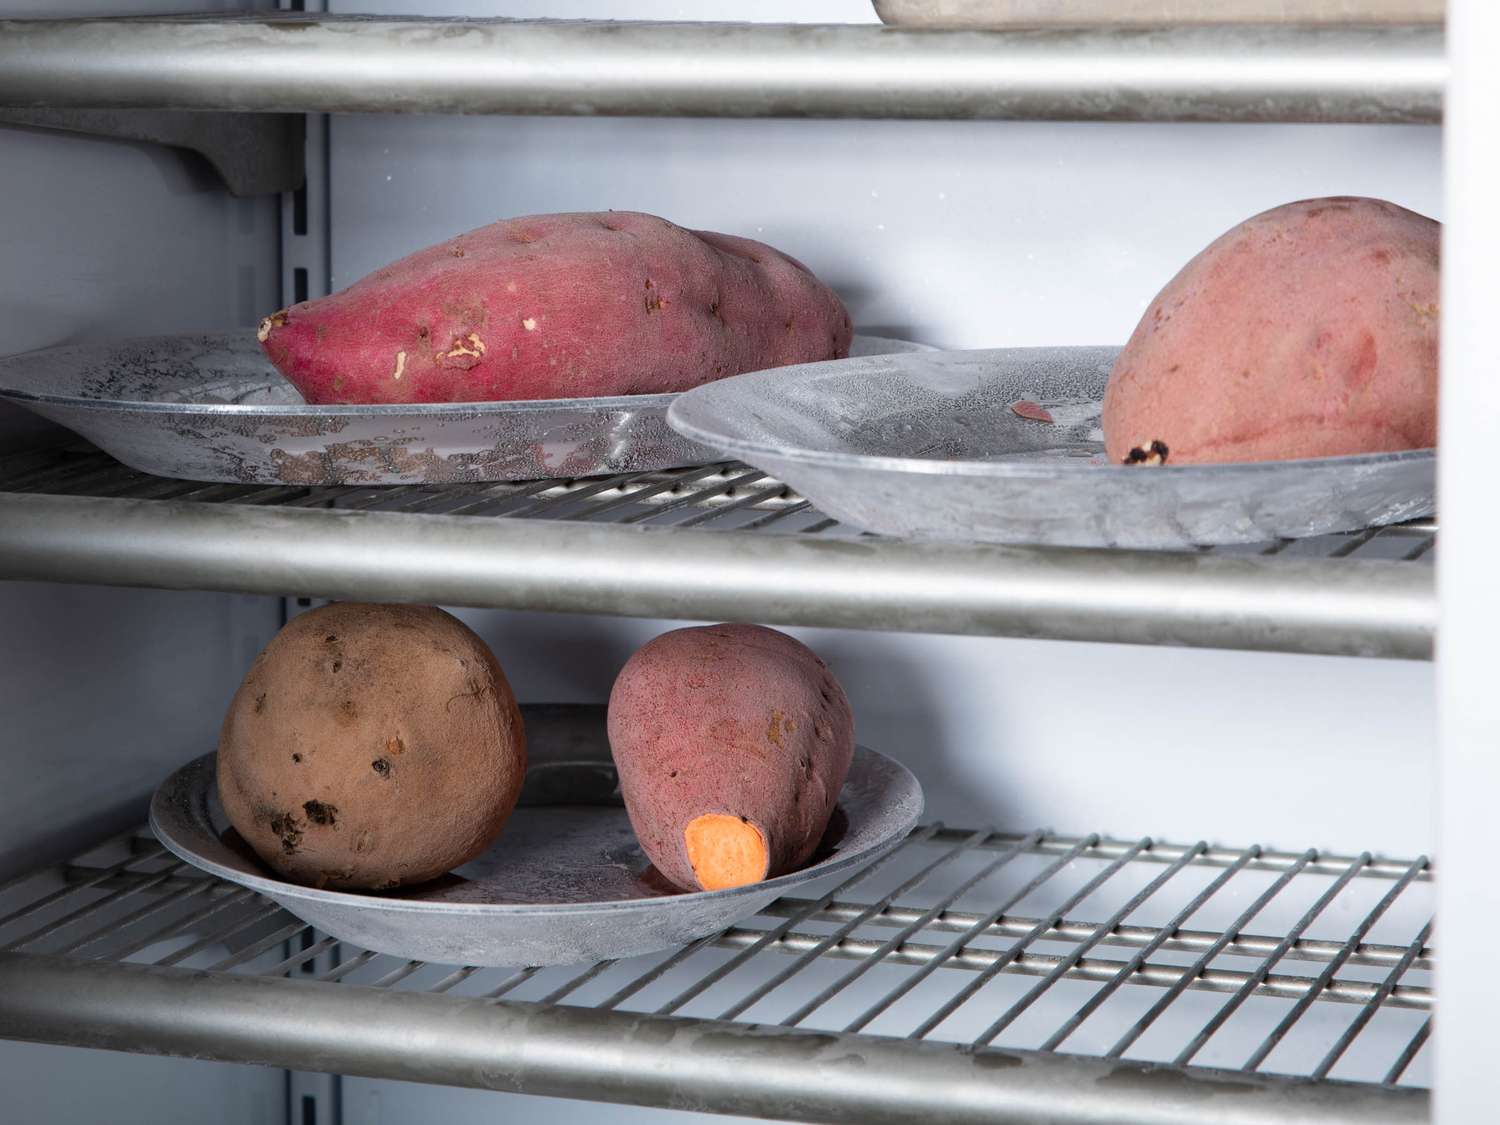 派上加红薯。冰箱里的盘子